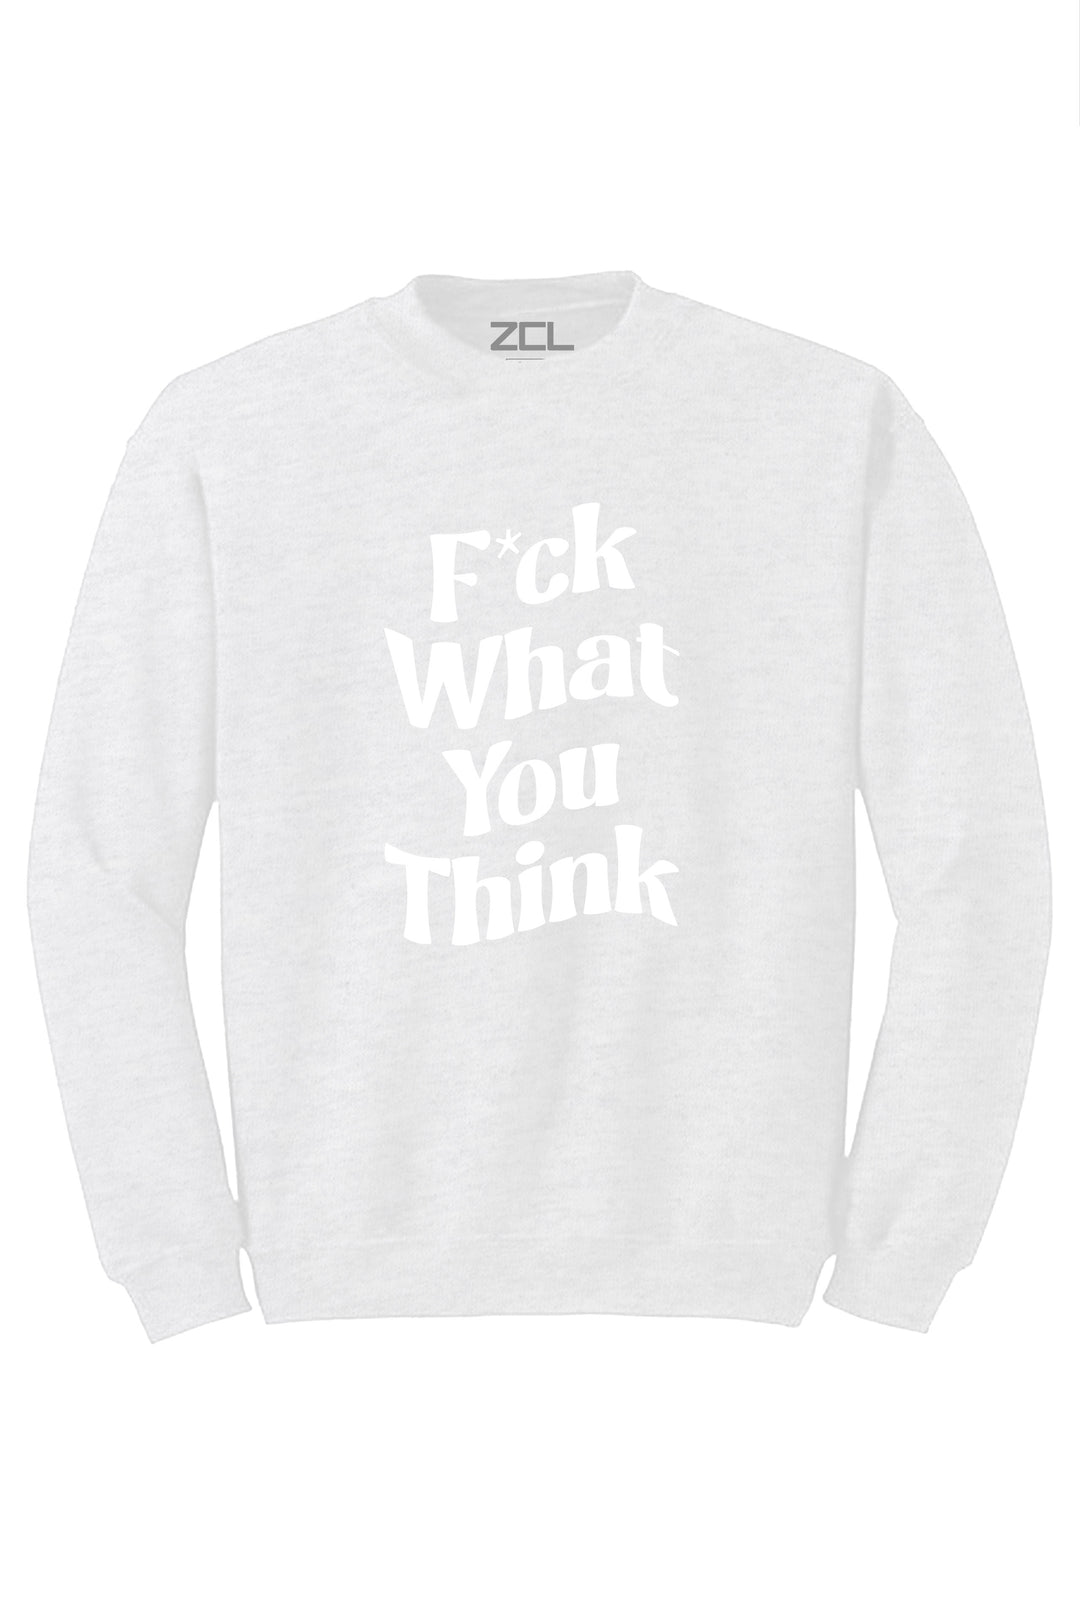 F What You Think Crewneck Sweatshirt (White Logo) - Zamage